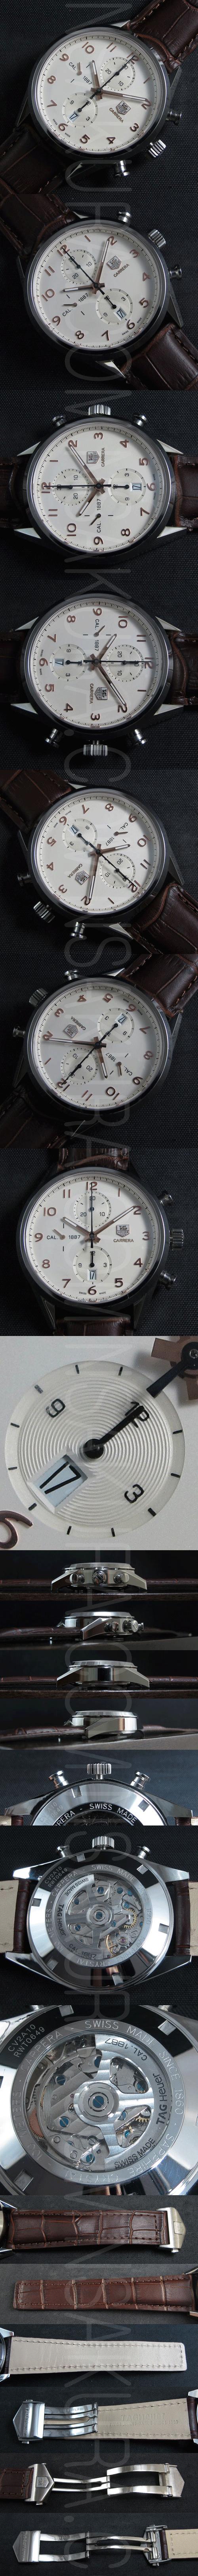 タグホイヤー腕時計の説明